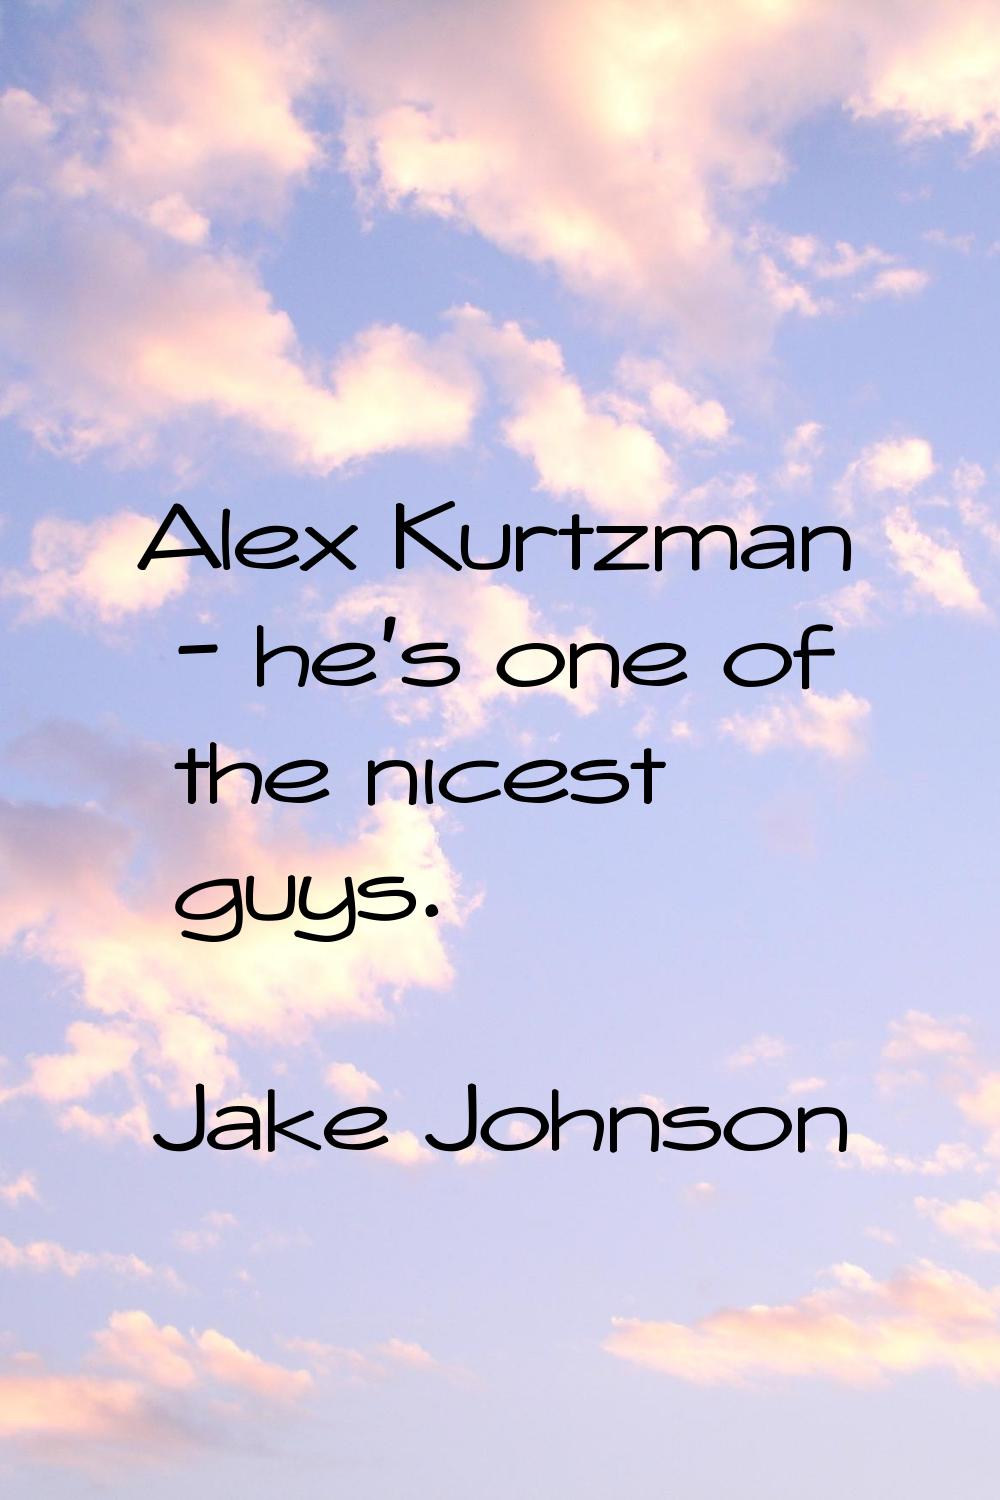 Alex Kurtzman - he's one of the nicest guys.